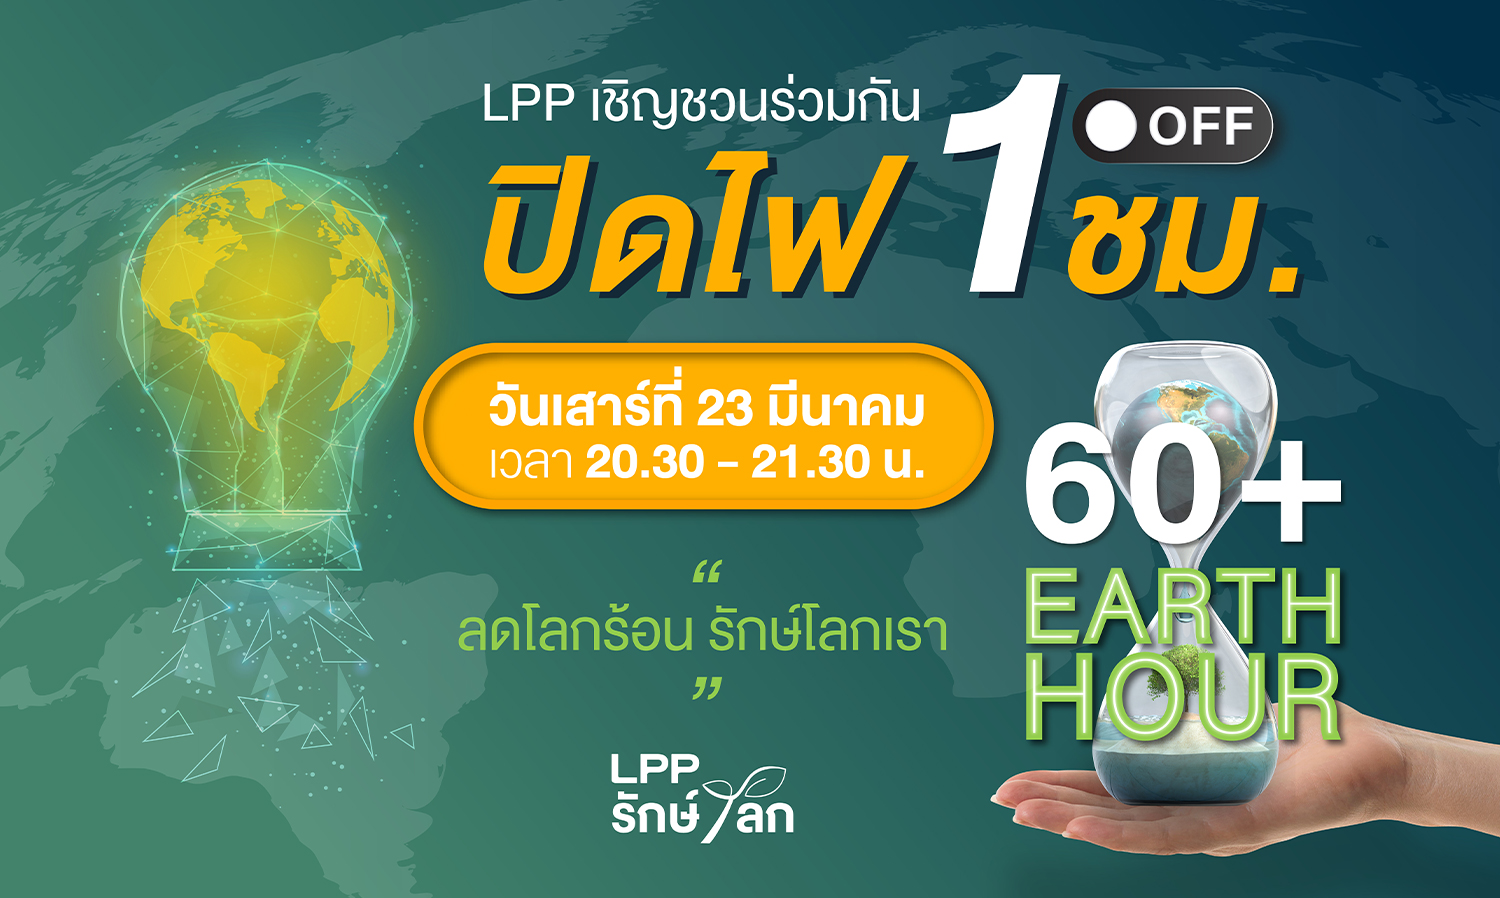 LPP ชวนคนไทยและลูกบ้านกว่า 261 โครงการ ผนึกกำลังร่วมปิดไฟ 1 ชม.ต่ออายุให้โลก